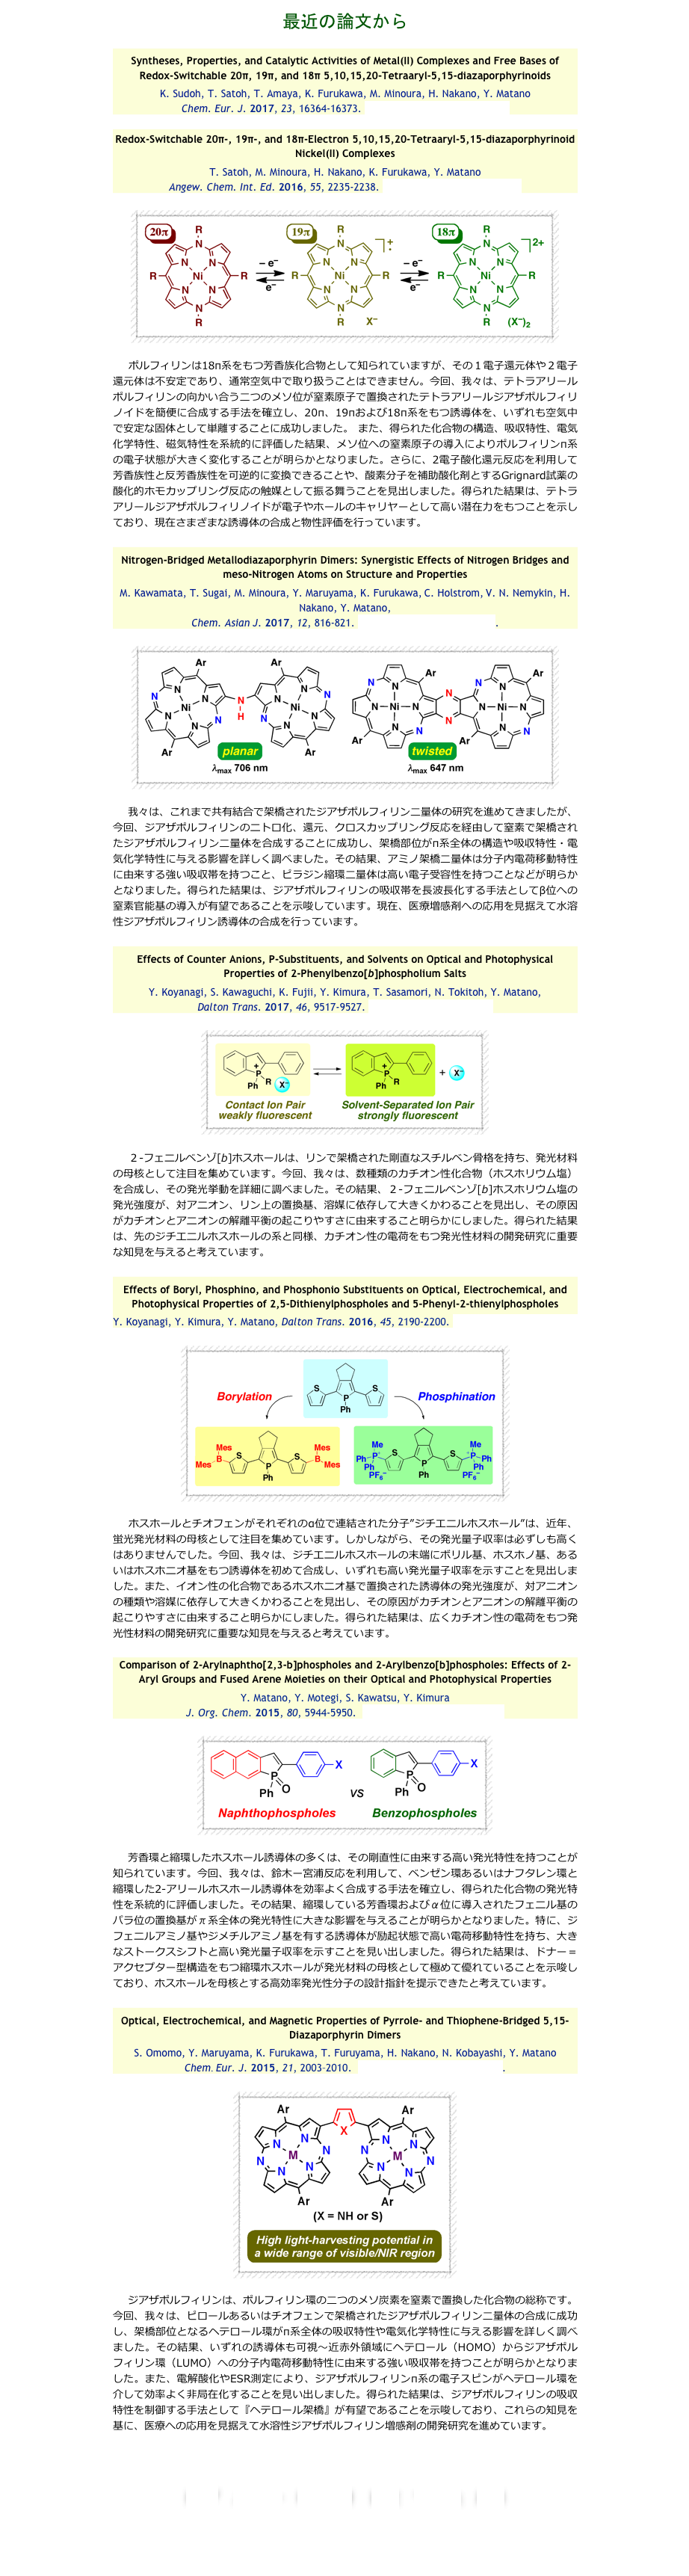 最近の論文から

Syntheses, Properties, and Catalytic Activities of Metal(II) Complexes and Free Bases of Redox-Switchable 20π, 19π, and 18π 5,10,15,20-Tetraaryl-5,15-diazaporphyrinoids
K. Sudoh, T. Satoh, T. Amaya, K. Furukawa, M. Minoura, H. Nakano, Y. Matano
Chem. Eur. J. 2017, 23, 16364-16373. DOI: 10.1002/chem.201703664

Redox-Switchable 20π-, 19π-, and 18π-Electron 5,10,15,20-Tetraaryl-5,15-diazaporphyrinoid Nickel(II) Complexes
T. Satoh, M. Minoura, H. Nakano, K. Furukawa, Y. Matano
Angew. Chem. Int. Ed. 2016, 55, 2235-2238. DOI: 10.1002/anie.201510734

￼

　ポルフィリンは18π系をもつ芳香族化合物として知られていますが、その１電子還元体や２電子還元体は不安定であり、通常空気中で取り扱うことはできません。今回、我々は、テトラアリールポルフィリンの向かい合う二つのメソ位が窒素原子で置換されたテトラアリールジアザポルフィリノイドを簡便に合成する手法を確立し、20π、19πおよび18π系をもつ誘導体を、いずれも空気中で安定な固体として単離することに成功しました。 また、得られた化合物の構造、吸収特性、電気化学特性、磁気特性を系統的に評価した結果、メソ位への窒素原子の導入によりポルフィリンπ系の電子状態が大きく変化することが明らかとなりました。さらに、2電子酸化還元反応を利用して芳香族性と反芳香族性を可逆的に変換できることや、酸素分子を補助酸化剤とするGrignard試薬の酸化的ホモカップリング反応の触媒として振る舞うことを見出しました。得られた結果は、テトラアリールジアザポルフィリノイドが電子やホールのキャリヤーとして高い潜在力をもつことを示しており、現在さまざまな誘導体の合成と物性評価を行っています。

Nitrogen-Bridged Metallodiazaporphyrin Dimers: Synergistic Effects of Nitrogen Bridges and meso-Nitrogen Atoms on Structure and Properties
M. Kawamata, T. Sugai, M. Minoura, Y. Maruyama, K. Furukawa, C. Holstrom, V. N. Nemykin, H. Nakano, Y. Matano, 
Chem. Asian J. 2017, 12, 816-821. DOI: 10.1002/asia.201700204.

￼

　我々は、これまで共有結合で架橋されたジアザポルフィリン二量体の研究を進めてきましたが、今回、ジアザポルフィリンのニトロ化、還元、クロスカップリング反応を経由して窒素で架橋されたジアザポルフィリン二量体を合成することに成功し、架橋部位がπ系全体の構造や吸収特性・電気化学特性に与える影響を詳しく調べました。その結果、アミノ架橋二量体は分子内電荷移動特性に由来する強い吸収帯を持つこと、ピラジン縮環二量体は高い電子受容性を持つことなどが明らかとなりました。得られた結果は、ジアザポルフィリンの吸収帯を長波長化する手法としてβ位への窒素官能基の導入が有望であることを示唆しています。現在、医療増感剤への応用を見据えて水溶性ジアザポルフィリン誘導体の合成を行っています。

Effects of Counter Anions, P-Substituents, and Solvents on Optical and Photophysical Properties of 2-Phenylbenzo[b]phospholium Salts
Y. Koyanagi, S. Kawaguchi, K. Fujii, Y. Kimura, T. Sasamori, N. Tokitoh, Y. Matano, 
Dalton Trans. 2017, 46, 9517-9527. DOI: 10.1039/C7DT01839H 

￼

　２-フェニルベンゾ[b]ホスホールは、リンで架橋された剛直なスチルベン骨格を持ち、発光材料の母核として注目を集めています。今回、我々は、数種類のカチオン性化合物（ホスホリウム塩）を合成し、その発光挙動を詳細に調べました。その結果、２-フェニルベンゾ[b]ホスホリウム塩の発光強度が、対アニオン、リン上の置換基、溶媒に依存して大きくかわることを見出し、その原因がカチオンとアニオンの解離平衡の起こりやすさに由来すること明らかにしました。得られた結果は、先のジチエニルホスホールの系と同様、カチオン性の電荷をもつ発光性材料の開発研究に重要な知見を与えると考えています。

Effects of Boryl, Phosphino, and Phosphonio Substituents on Optical, Electrochemical, and Photophysical Properties of 2,5-Dithienylphospholes and 5-Phenyl-2-thienylphospholes
Y. Koyanagi, Y. Kimura, Y. Matano, Dalton Trans. 2016, 45, 2190-2200. DOI: 10.1039/C5DT03362D 

￼

　ホスホールとチオフェンがそれぞれのα位で連結された分子”ジチエニルホスホール”は、近年、蛍光発光材料の母核として注目を集めています。しかしながら、その発光量子収率は必ずしも高くはありませんでした。今回、我々は、ジチエニルホスホールの末端にボリル基、ホスホノ基、あるいはホスホニオ基をもつ誘導体を初めて合成し、いずれも高い発光量子収率を示すことを見出しました。また、イオン性の化合物であるホスホニオ基で置換された誘導体の発光強度が、対アニオンの種類や溶媒に依存して大きくかわることを見出し、その原因がカチオンとアニオンの解離平衡の起こりやすさに由来すること明らかにしました。得られた結果は、広くカチオン性の電荷をもつ発光性材料の開発研究に重要な知見を与えると考えています。

Comparison of 2-Arylnaphtho[2,3-b]phospholes and 2-Arylbenzo[b]phospholes: Effects of 2-Aryl Groups and Fused Arene Moieties on their Optical and Photophysical Properties
Y. Matano, Y. Motegi, S. Kawatsu, Y. Kimura
J. Org. Chem. 2015, 80, 5944-5950.  DOI: 10.1021/acs.joc.5b00541

￼

　芳香環と縮環したホスホール誘導体の多くは、その剛直性に由来する高い発光特性を持つことが知られています。今回、我々は、鈴木ー宮浦反応を利用して、ベンゼン環あるいはナフタレン環と縮環した2-アリールホスホール誘導体を効率よく合成する手法を確立し、得られた化合物の発光特性を系統的に評価しました。その結果、縮環している芳香環およびα位に導入されたフェニル基のパラ位の置換基がπ系全体の発光特性に大きな影響を与えることが明らかとなりました。特に、ジフェニルアミノ基やジメチルアミノ基を有する誘導体が励起状態で高い電荷移動特性を持ち、大きなストークスシフトと高い発光量子収率を示すことを見い出しました。得られた結果は、ドナー＝アクセプター型構造をもつ縮環ホスホールが発光材料の母核として極めて優れていることを示唆しており、ホスホールを母核とする高効率発光性分子の設計指針を提示できたと考えています。

Optical, Electrochemical, and Magnetic Properties of Pyrrole- and Thiophene-Bridged 5,15-Diazaporphyrin Dimers
S. Omomo, Y. Maruyama, K. Furukawa, T. Furuyama, H. Nakano, N. Kobayashi, Y. Matano
Chem. Eur. J. 2015, 21, 2003–2010.  DOI: 10.1002/chem.201405482.

￼

　ジアザポルフィリンは、ポルフィリン環の二つのメソ炭素を窒素で置換した化合物の総称です。今回、我々は、ピロールあるいはチオフェンで架橋されたジアザポルフィリン二量体の合成に成功し、架橋部位となるヘテロール環がπ系全体の吸収特性や電気化学特性に与える影響を詳しく調べました。その結果、いずれの誘導体も可視〜近赤外領域にヘテロール（HOMO）からジアザポルフィリン環（LUMO）への分子内電荷移動特性に由来する強い吸収帯を持つことが明らかとなりました。また、電解酸化やESR測定により、ジアザポルフィリンπ系の電子スピンがヘテロール環を介して効率よく非局在化することを見い出しました。得られた結果は、ジアザポルフィリンの吸収特性を制御する手法として『ヘテロール架橋』が有望であることを示唆しており、これらの知見を基に、医療への応用を見据えて水溶性ジアザポルフィリン増感剤の開発研究を進めています。



トップ　　　　メンバー　　　　研究概要　　　　　論文　　　　できごと　　　　風景

化学科ホームページへ
新潟大学ホームページへ
 
 